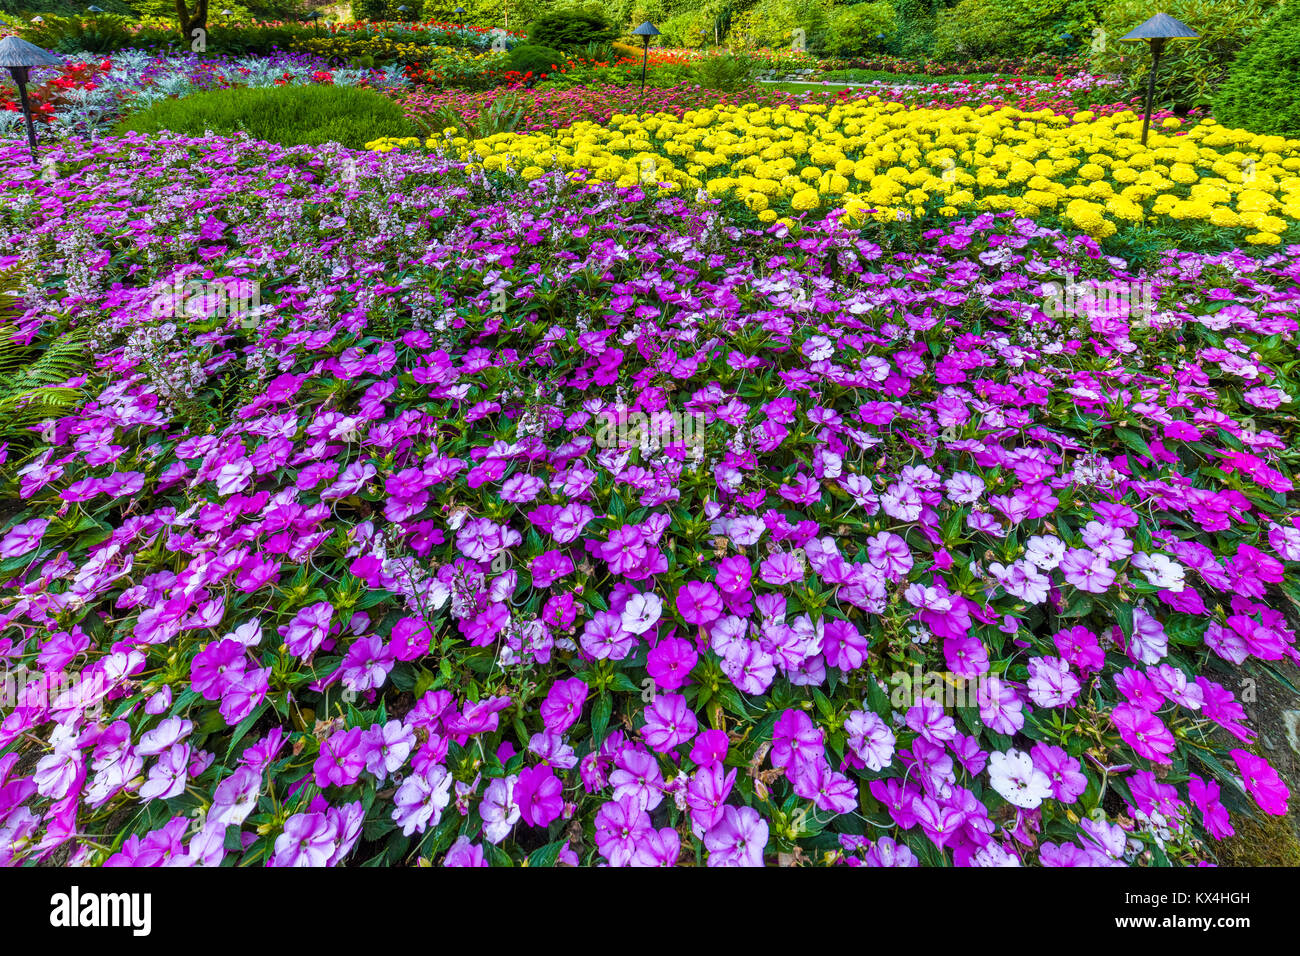 Butchart Gardens in Victoria, British Columbia, Canada preso Agosto 2017 colorata viola e fiori di colore giallo nel letto di fiori nel giardino Foto Stock